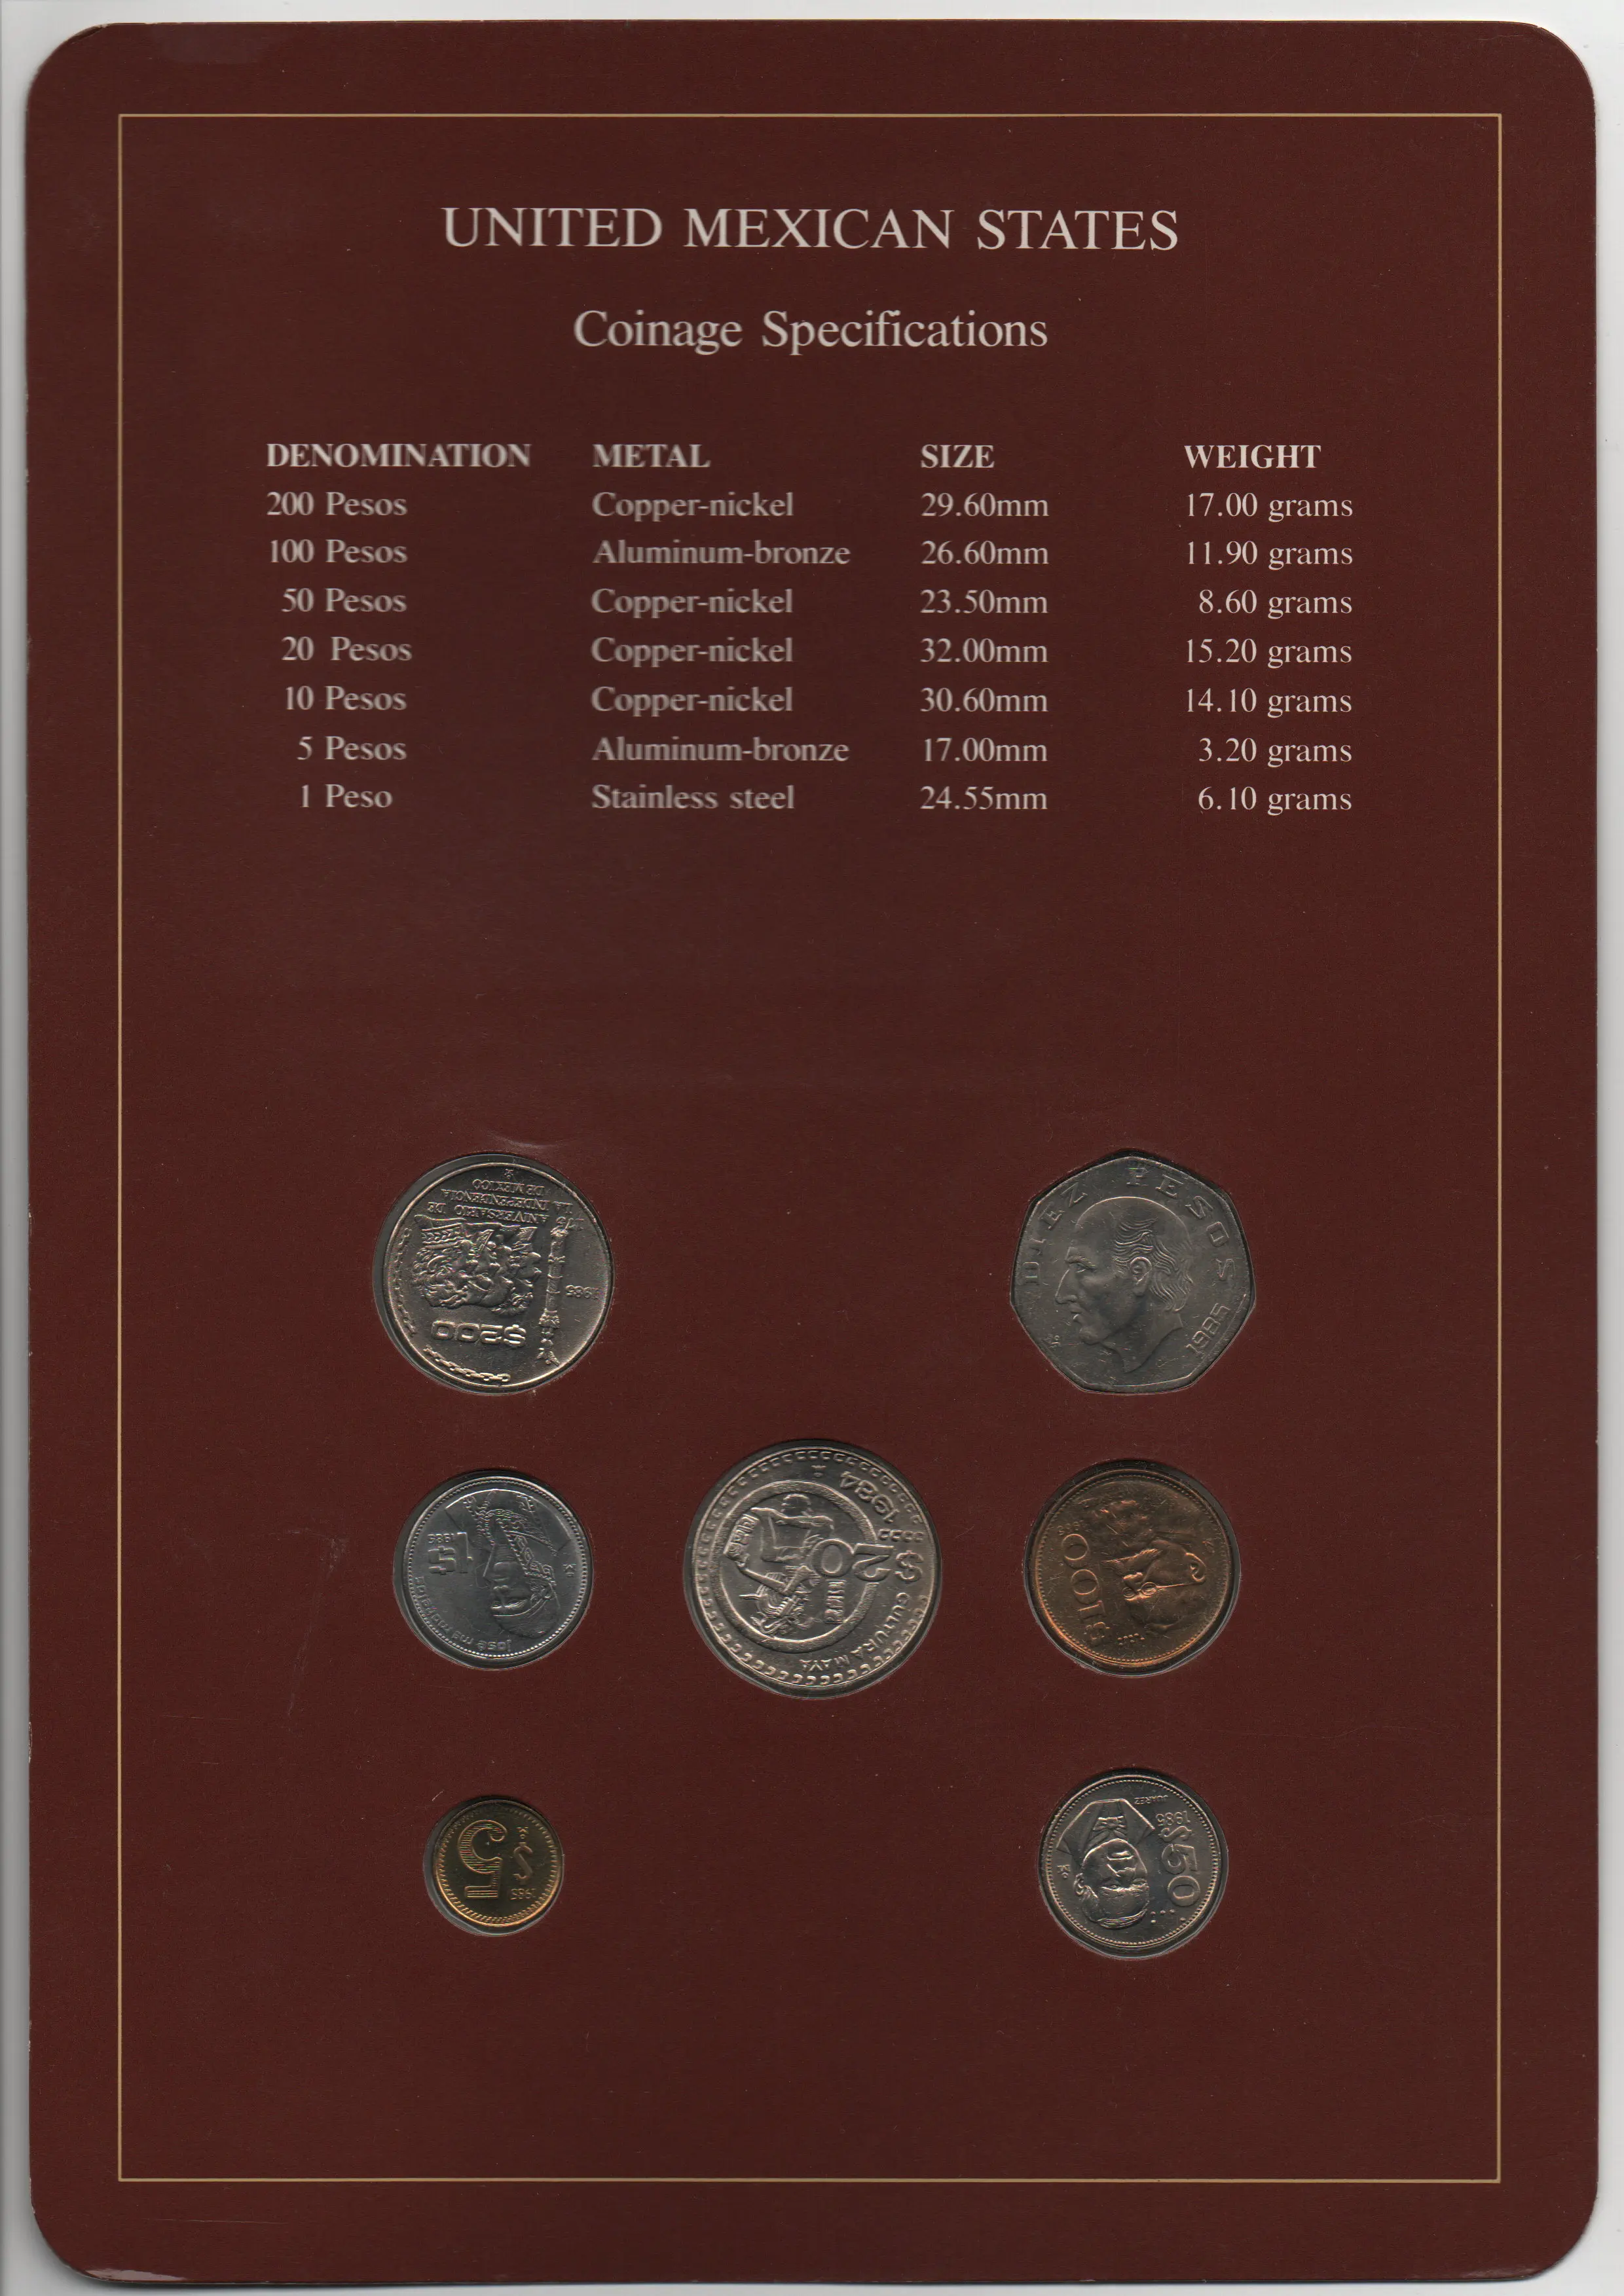 Франклин Почтовая печать Мексика 1984-1985 Монеты 7 штук набор монет по 1-200 песо 100% Оригинал